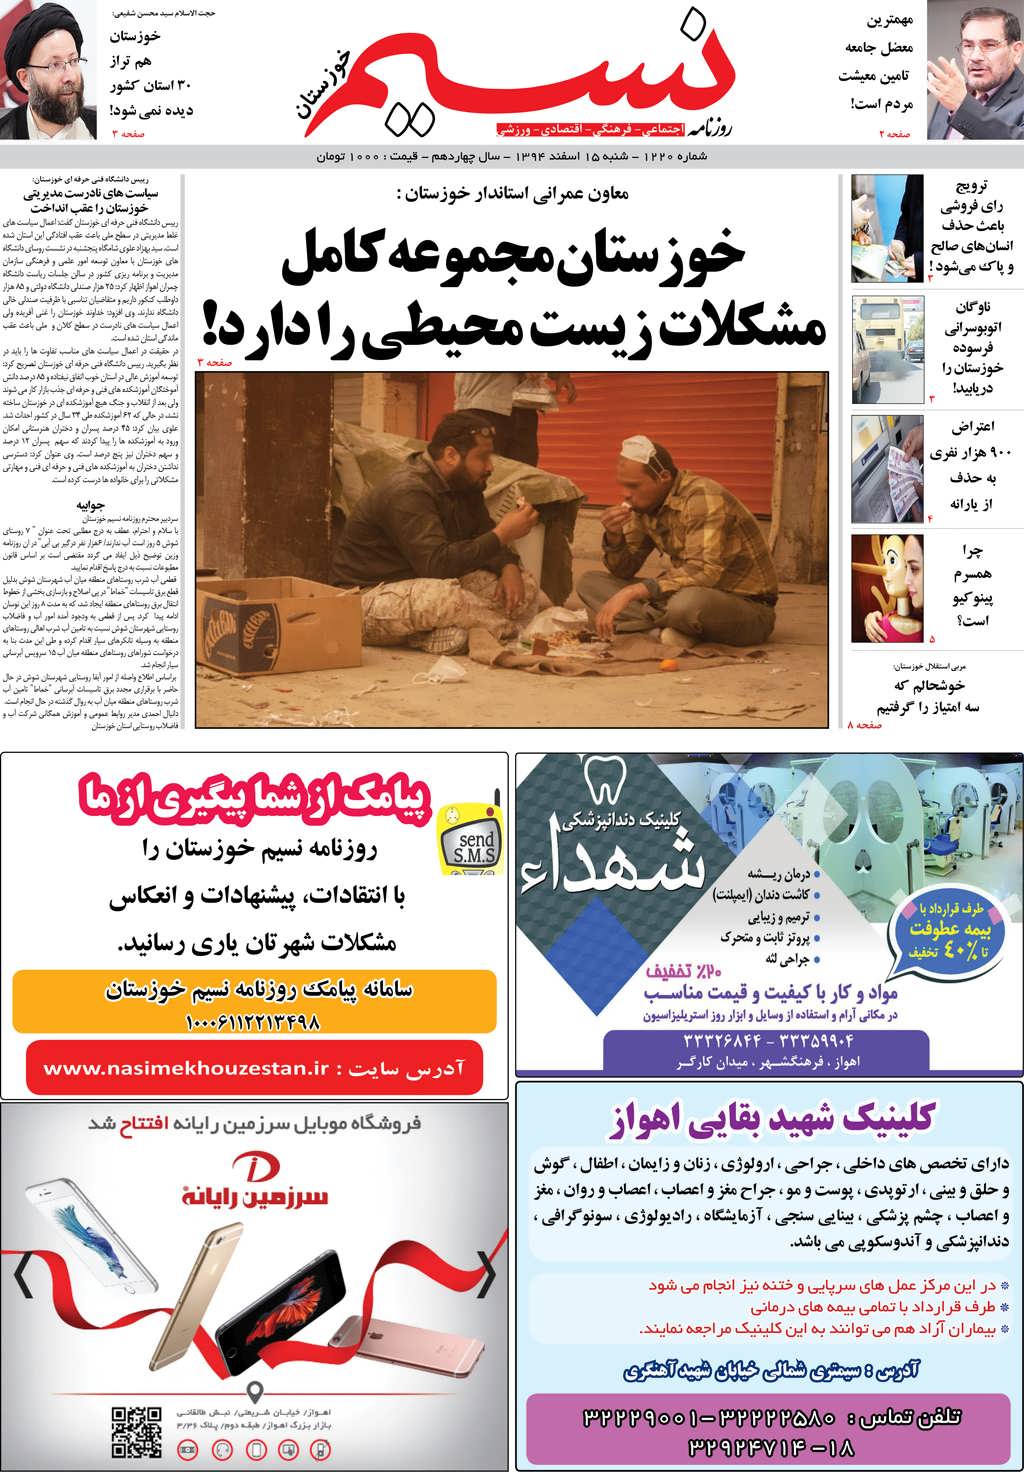 صفحه اصلی روزنامه نسیم شماره 1220